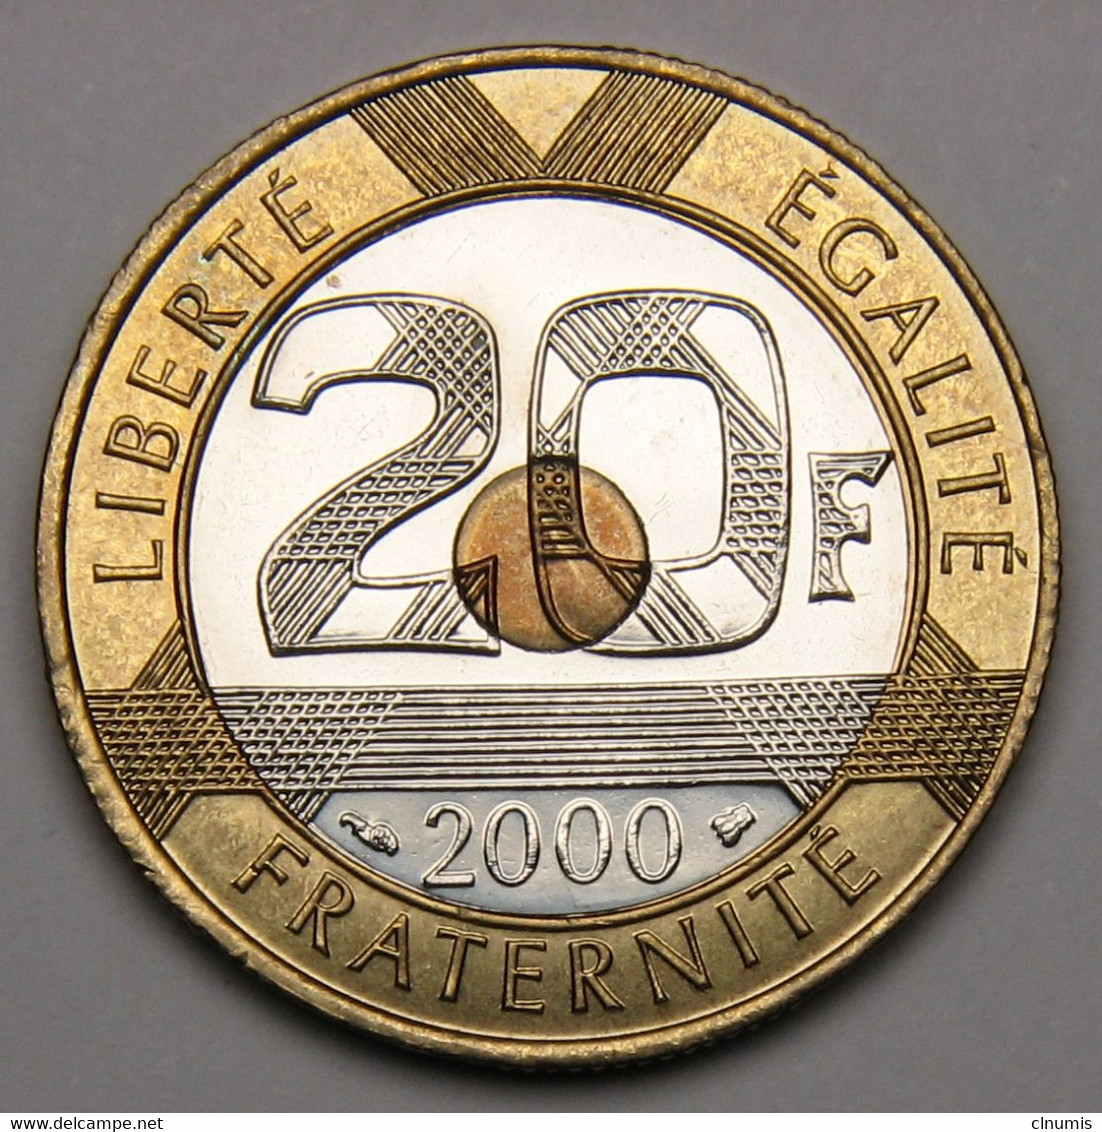 ASSEZ RARE, ISSUE D'un Coffret BU ! 20 Francs Mont Saint-Michel, 2000, Bronze-aluminium Nickel - V° République - 20 Francs